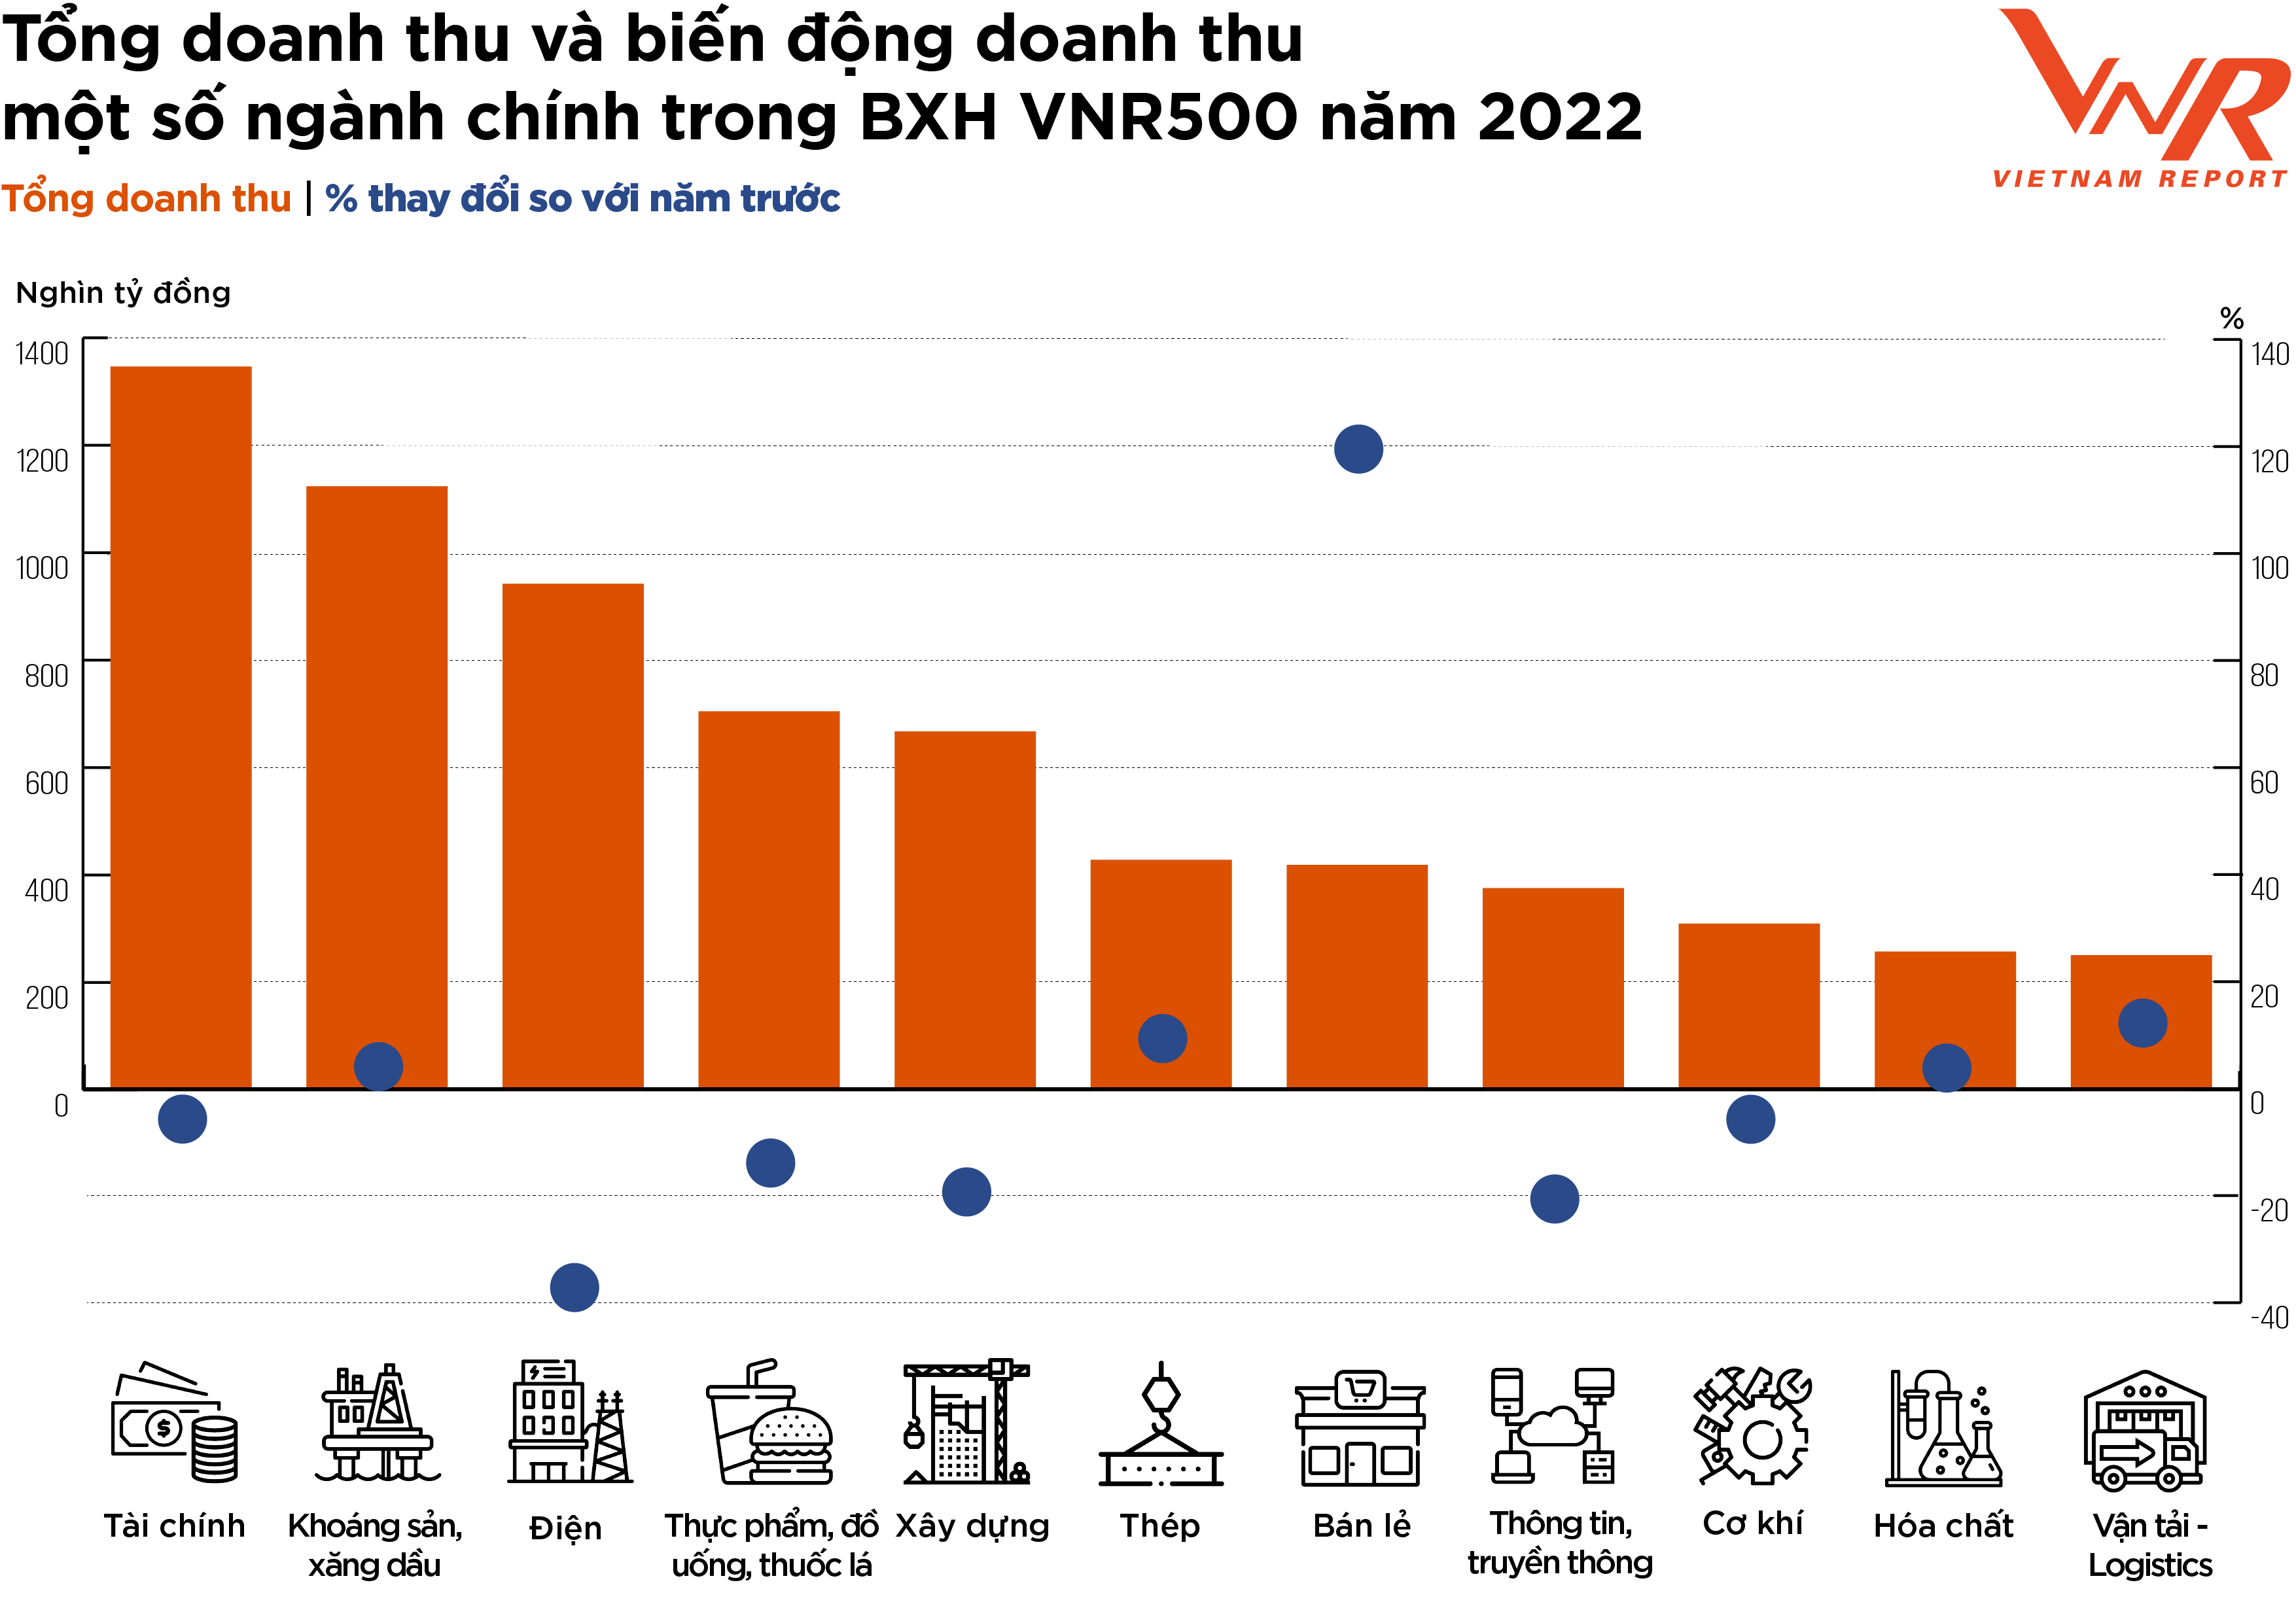 
Nguồn: Thống kê từ Bảng xếp hạng VNR500 năm 2021 và 2022, thực hiện bởi Vietnam Report
